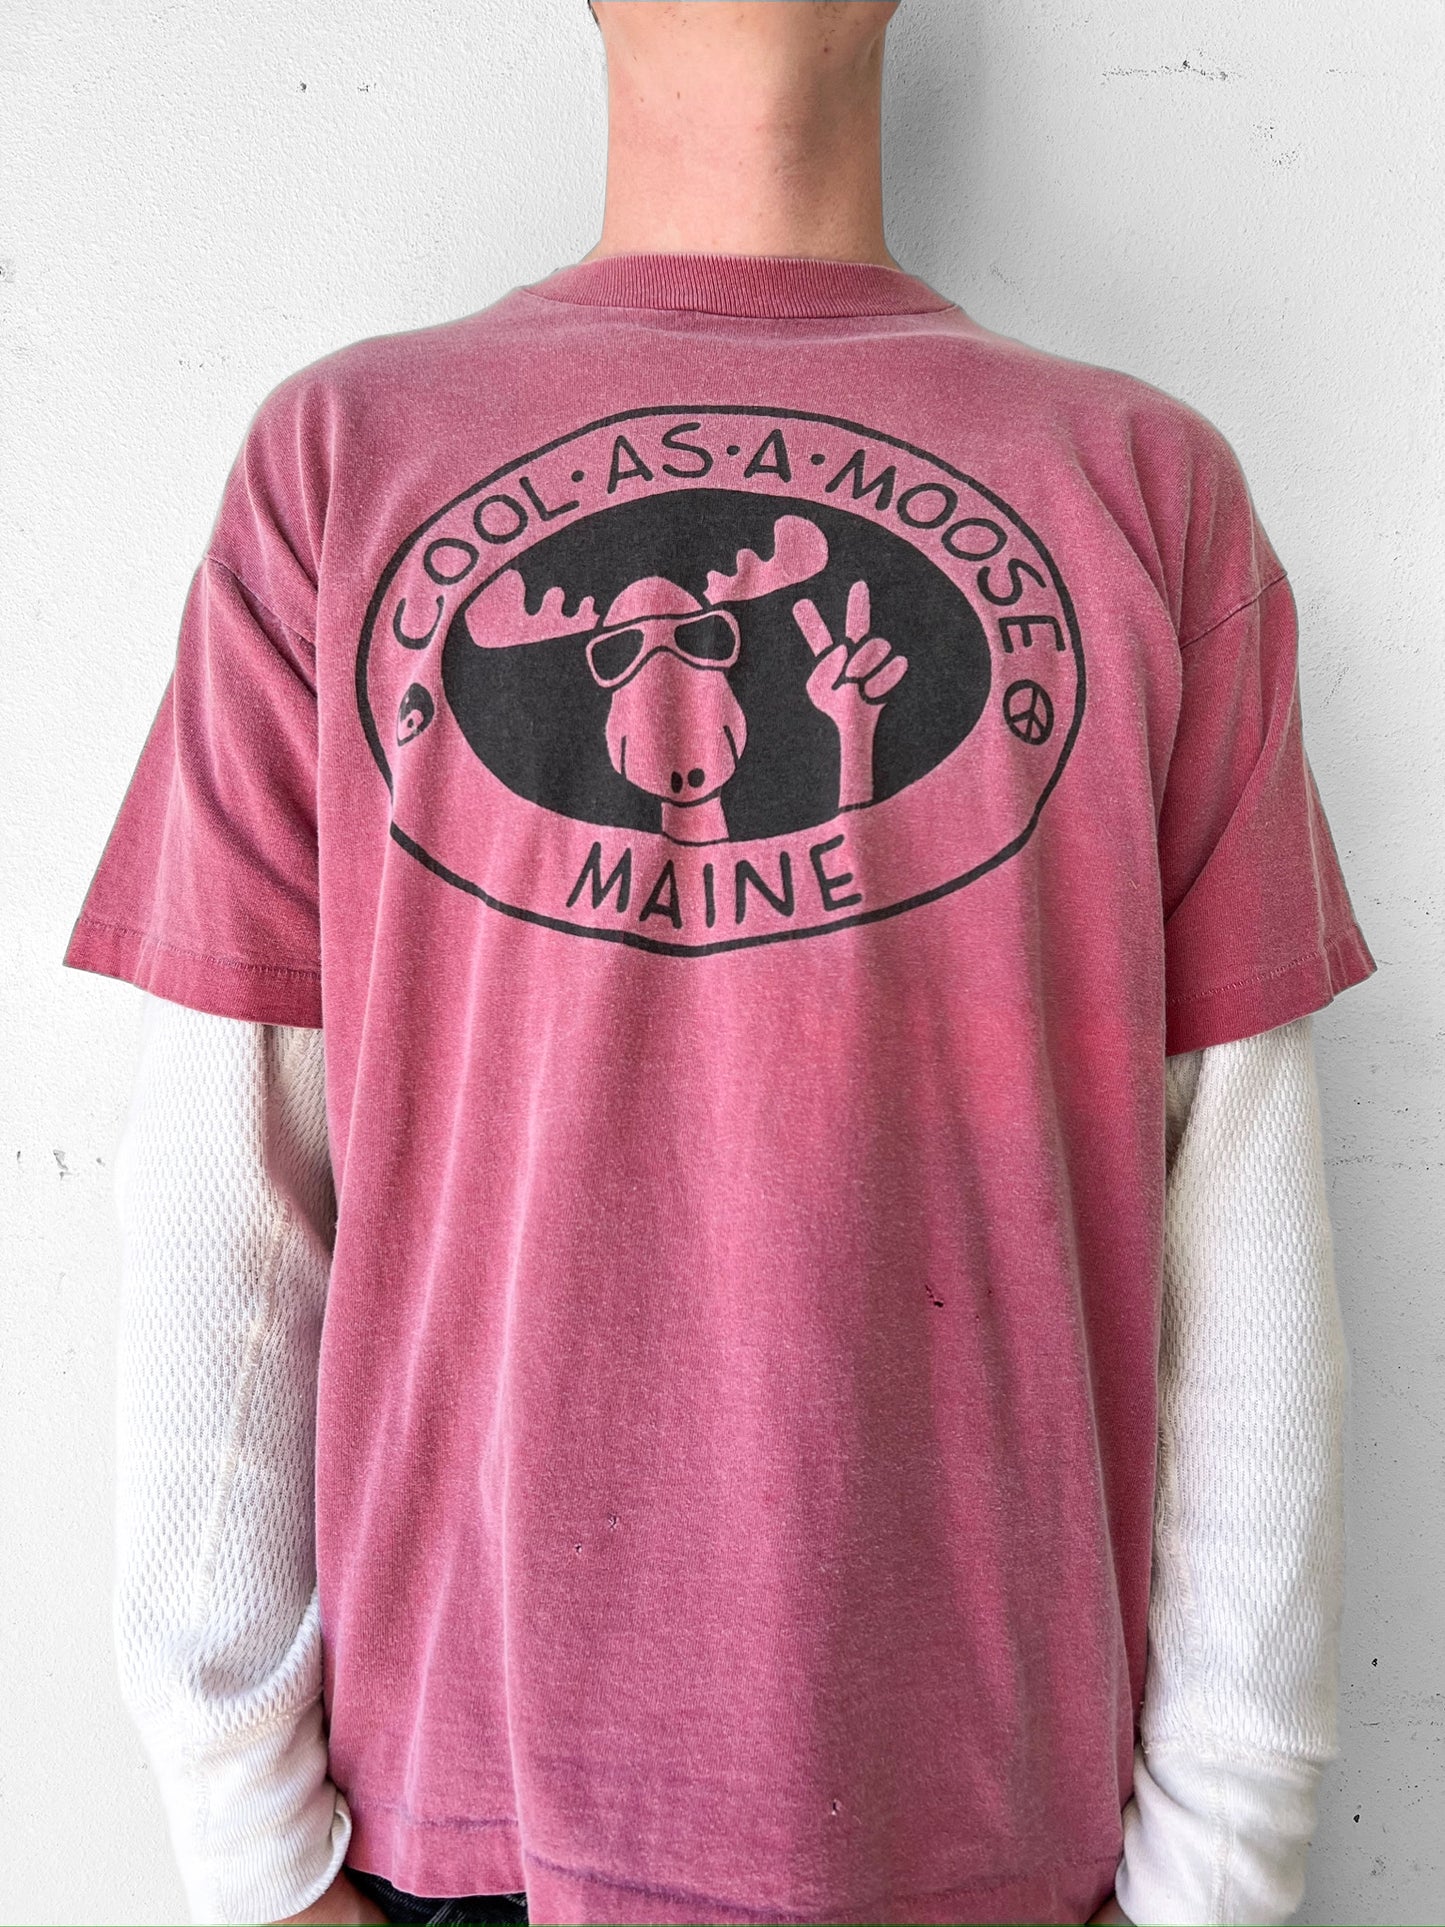 90’s "Cool as a Moose" Maine Art Shirt - XL